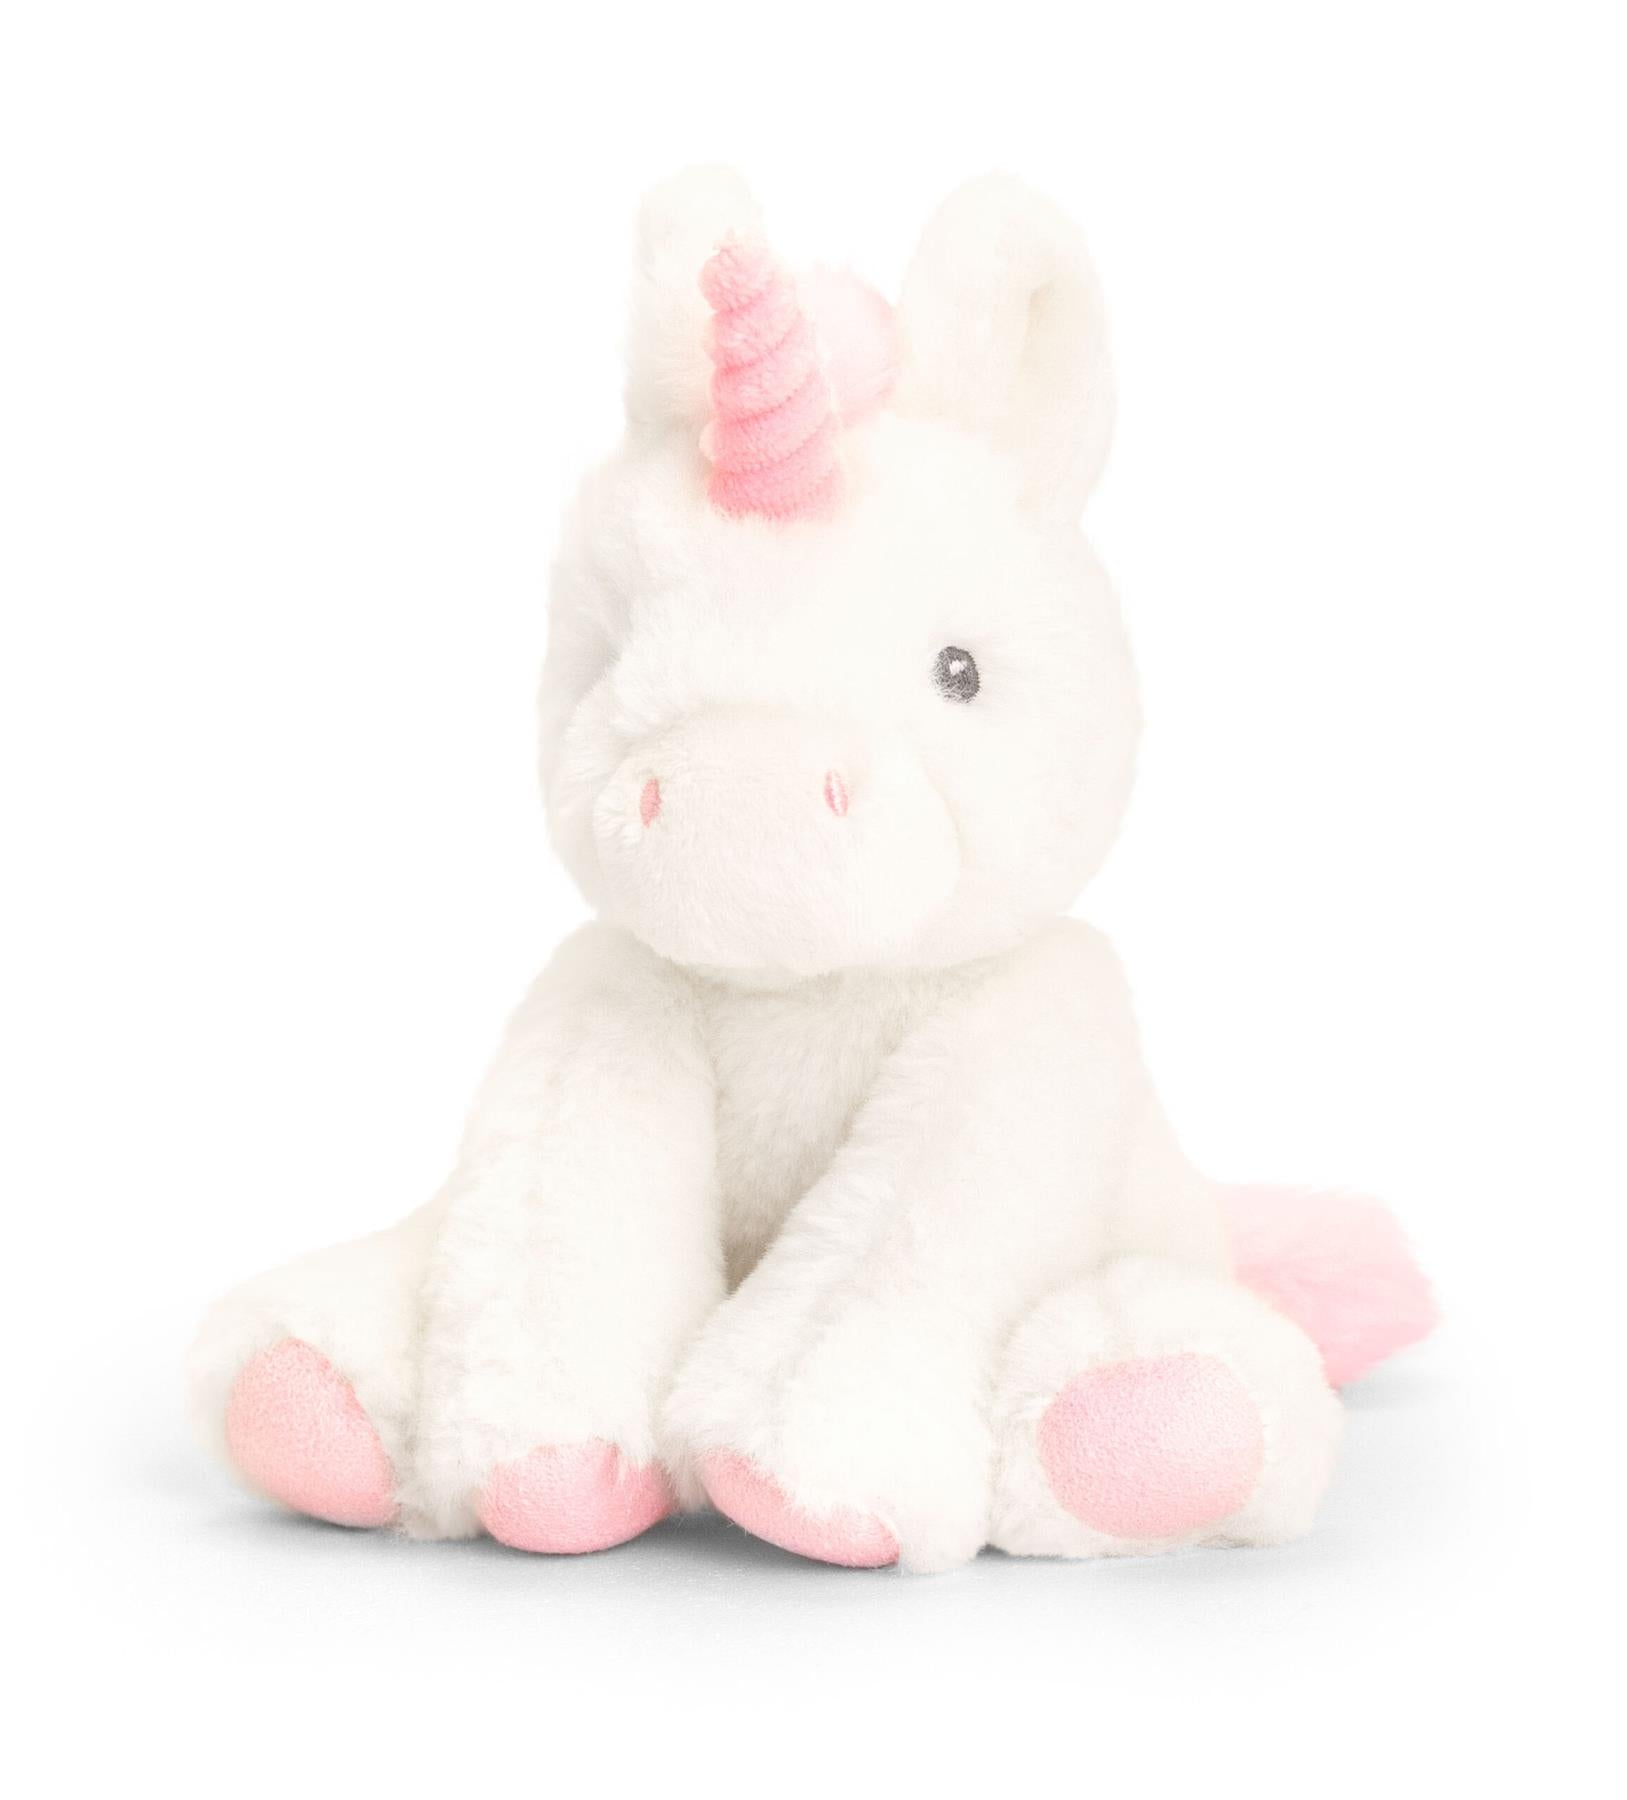 Keeleco Baby Twinkle Unicorn 14cm